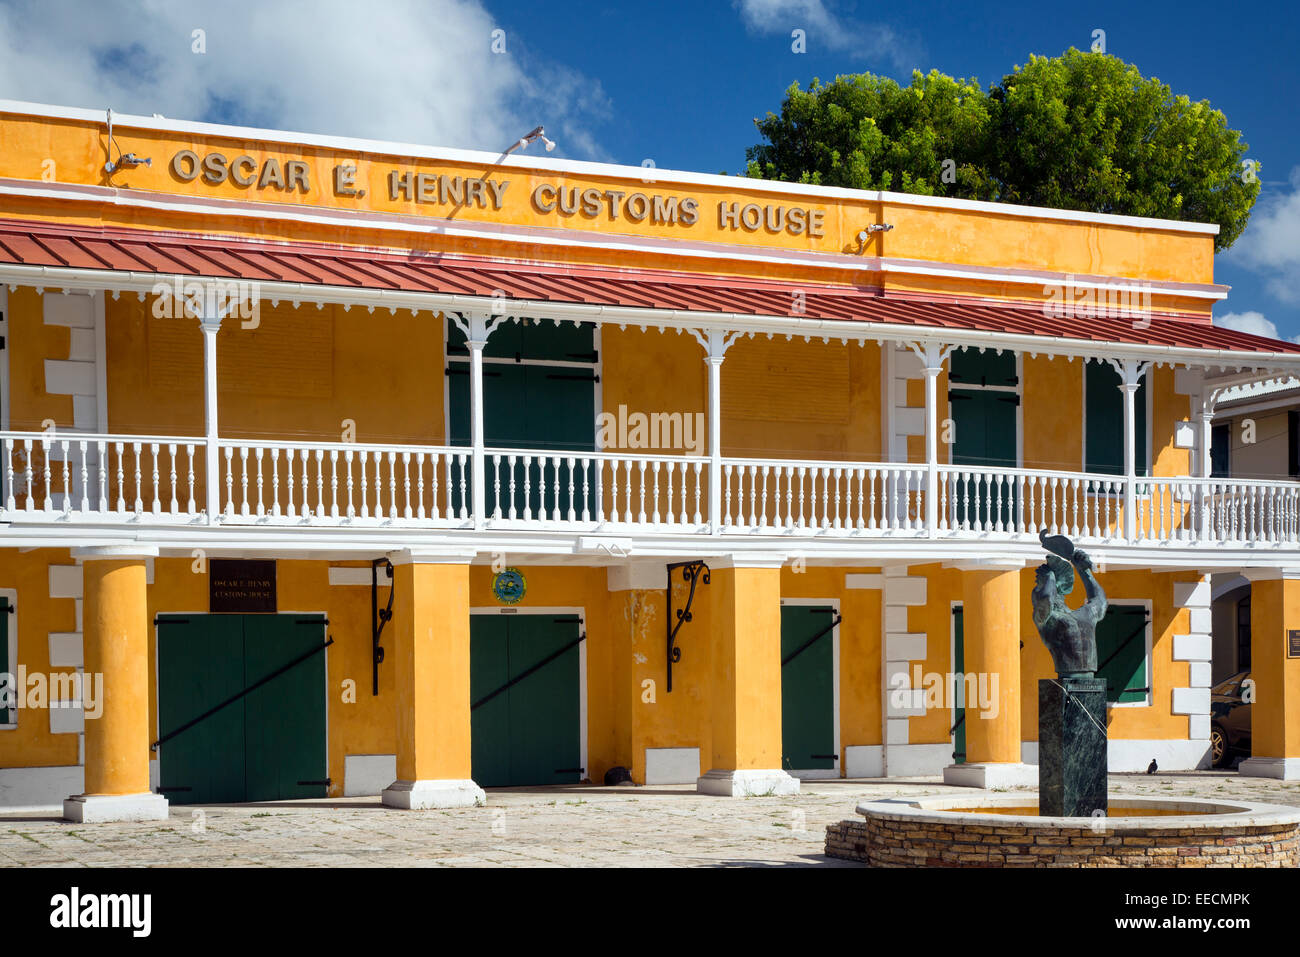 Oscar E. Henry de douanes le long du front de mer, Frederiksted, St Croix, Îles Vierges Américaines Banque D'Images